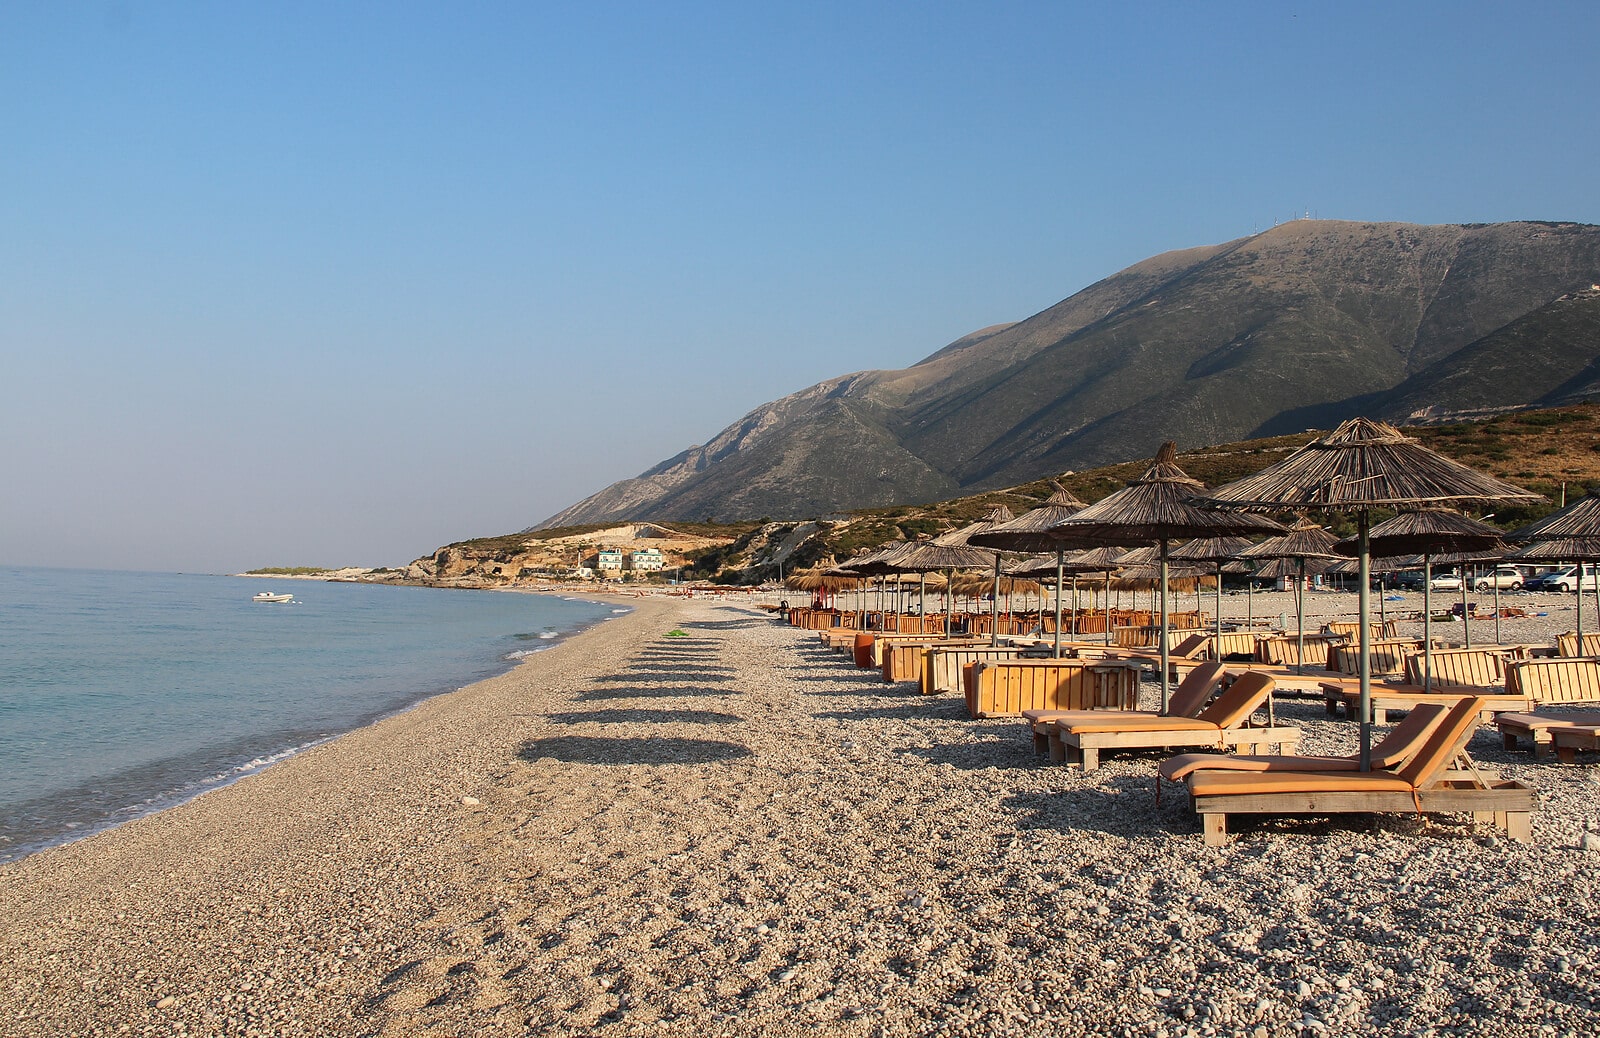 Albanija je i ove godine popularna destinacija za ljetovanje, pogledajte kakve su cijene